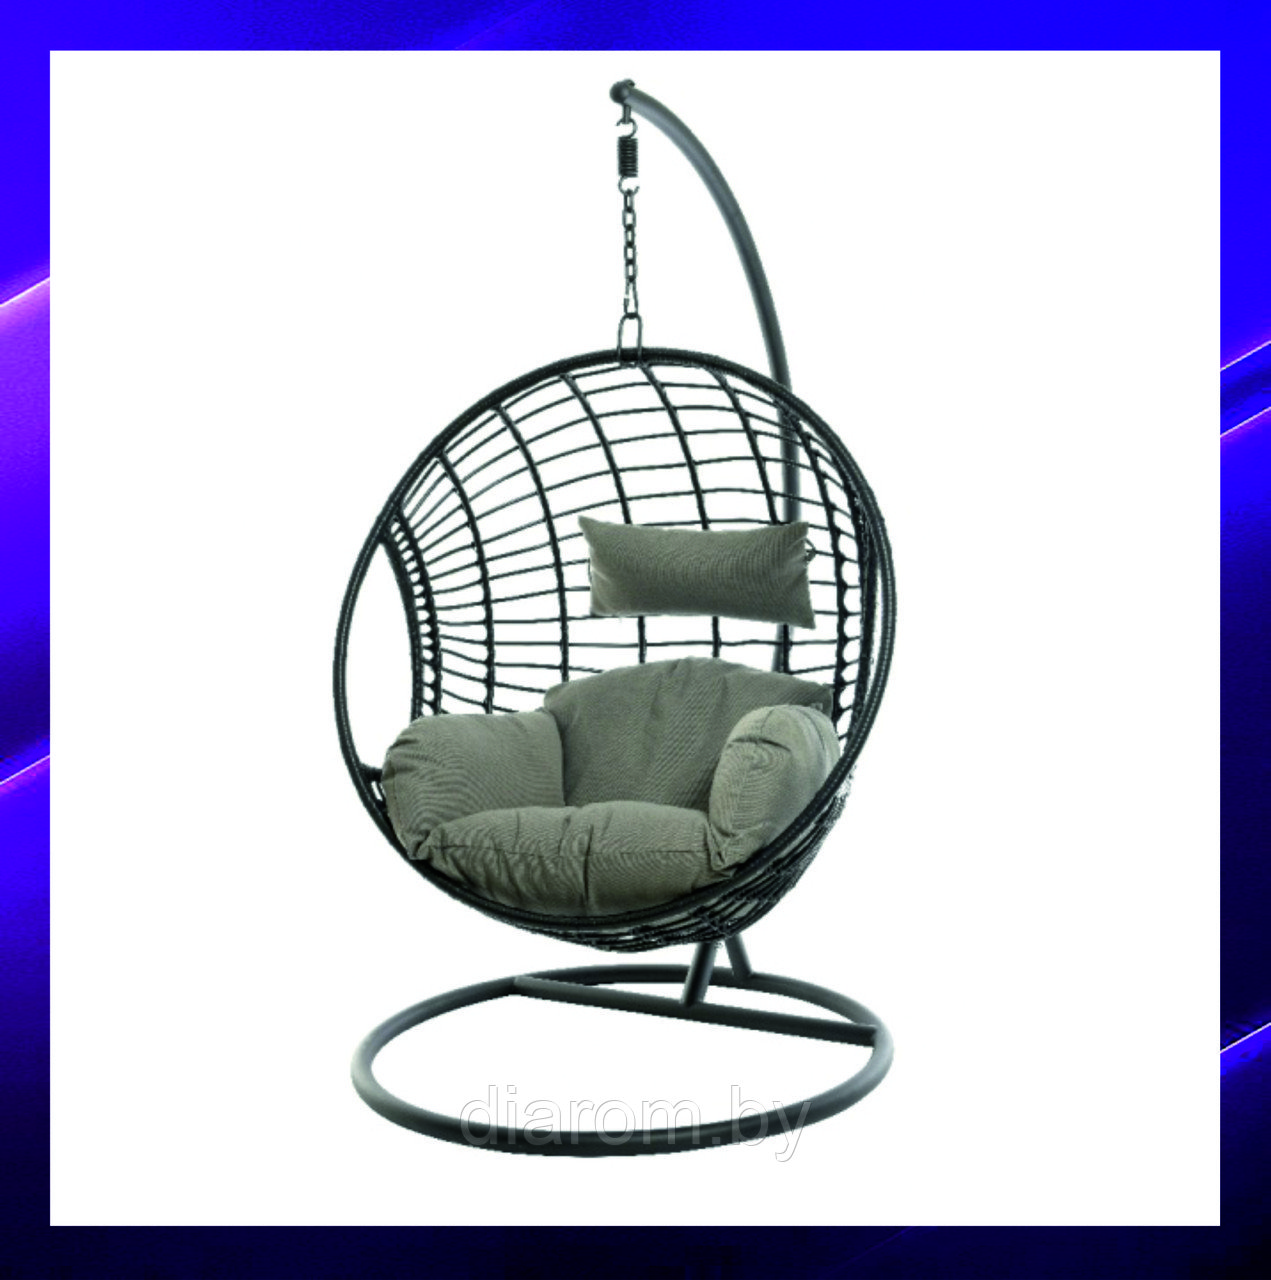 Подвесное кресло Illumax Лондон для улицы, сада с двумя мягкими подушками темно серого цвета